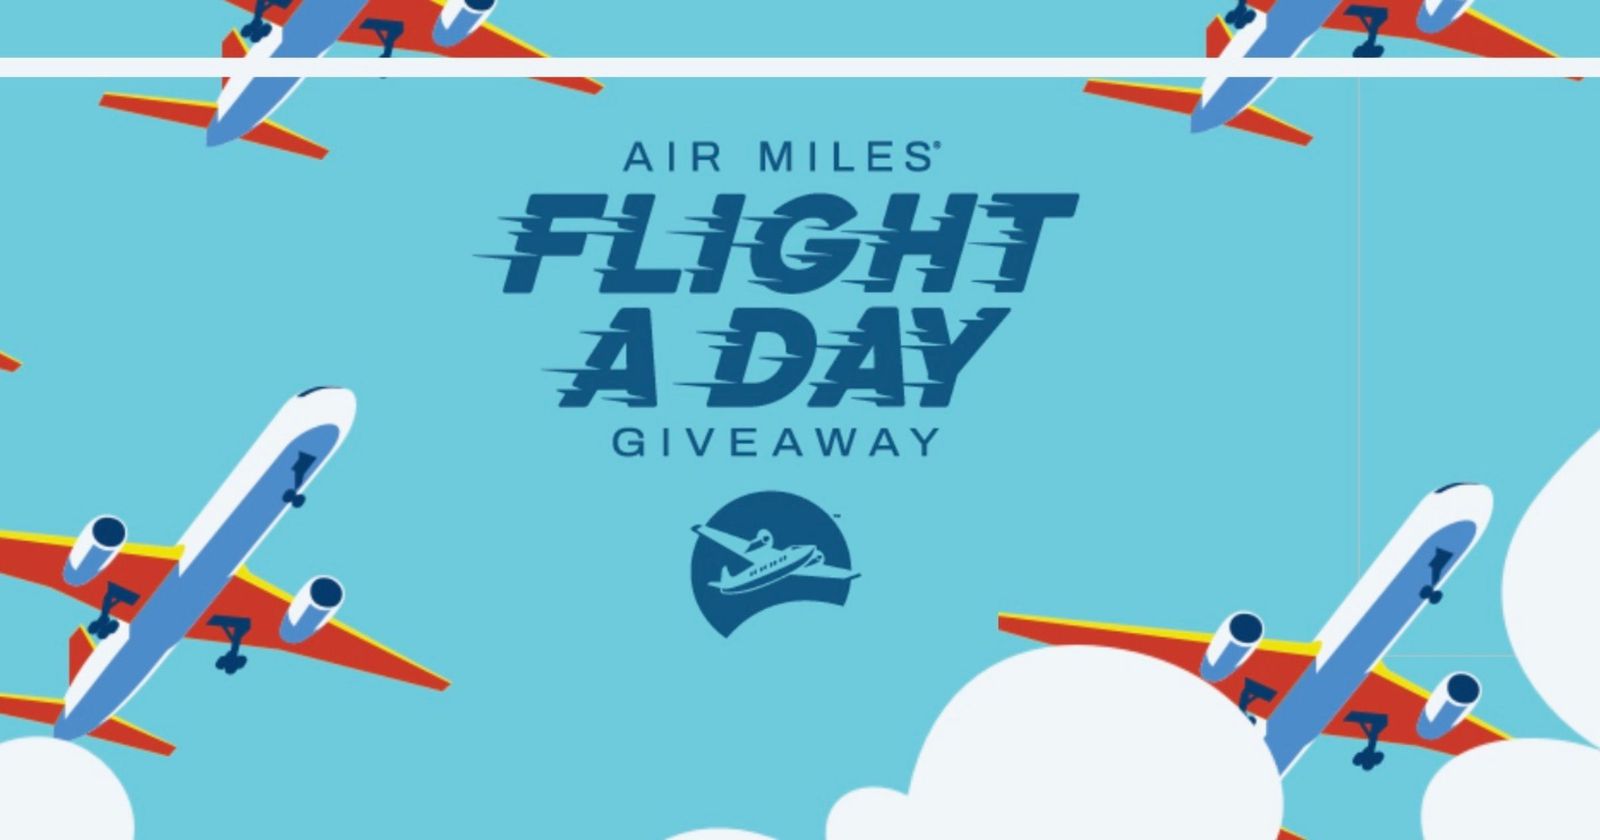 contest air miles free flights en